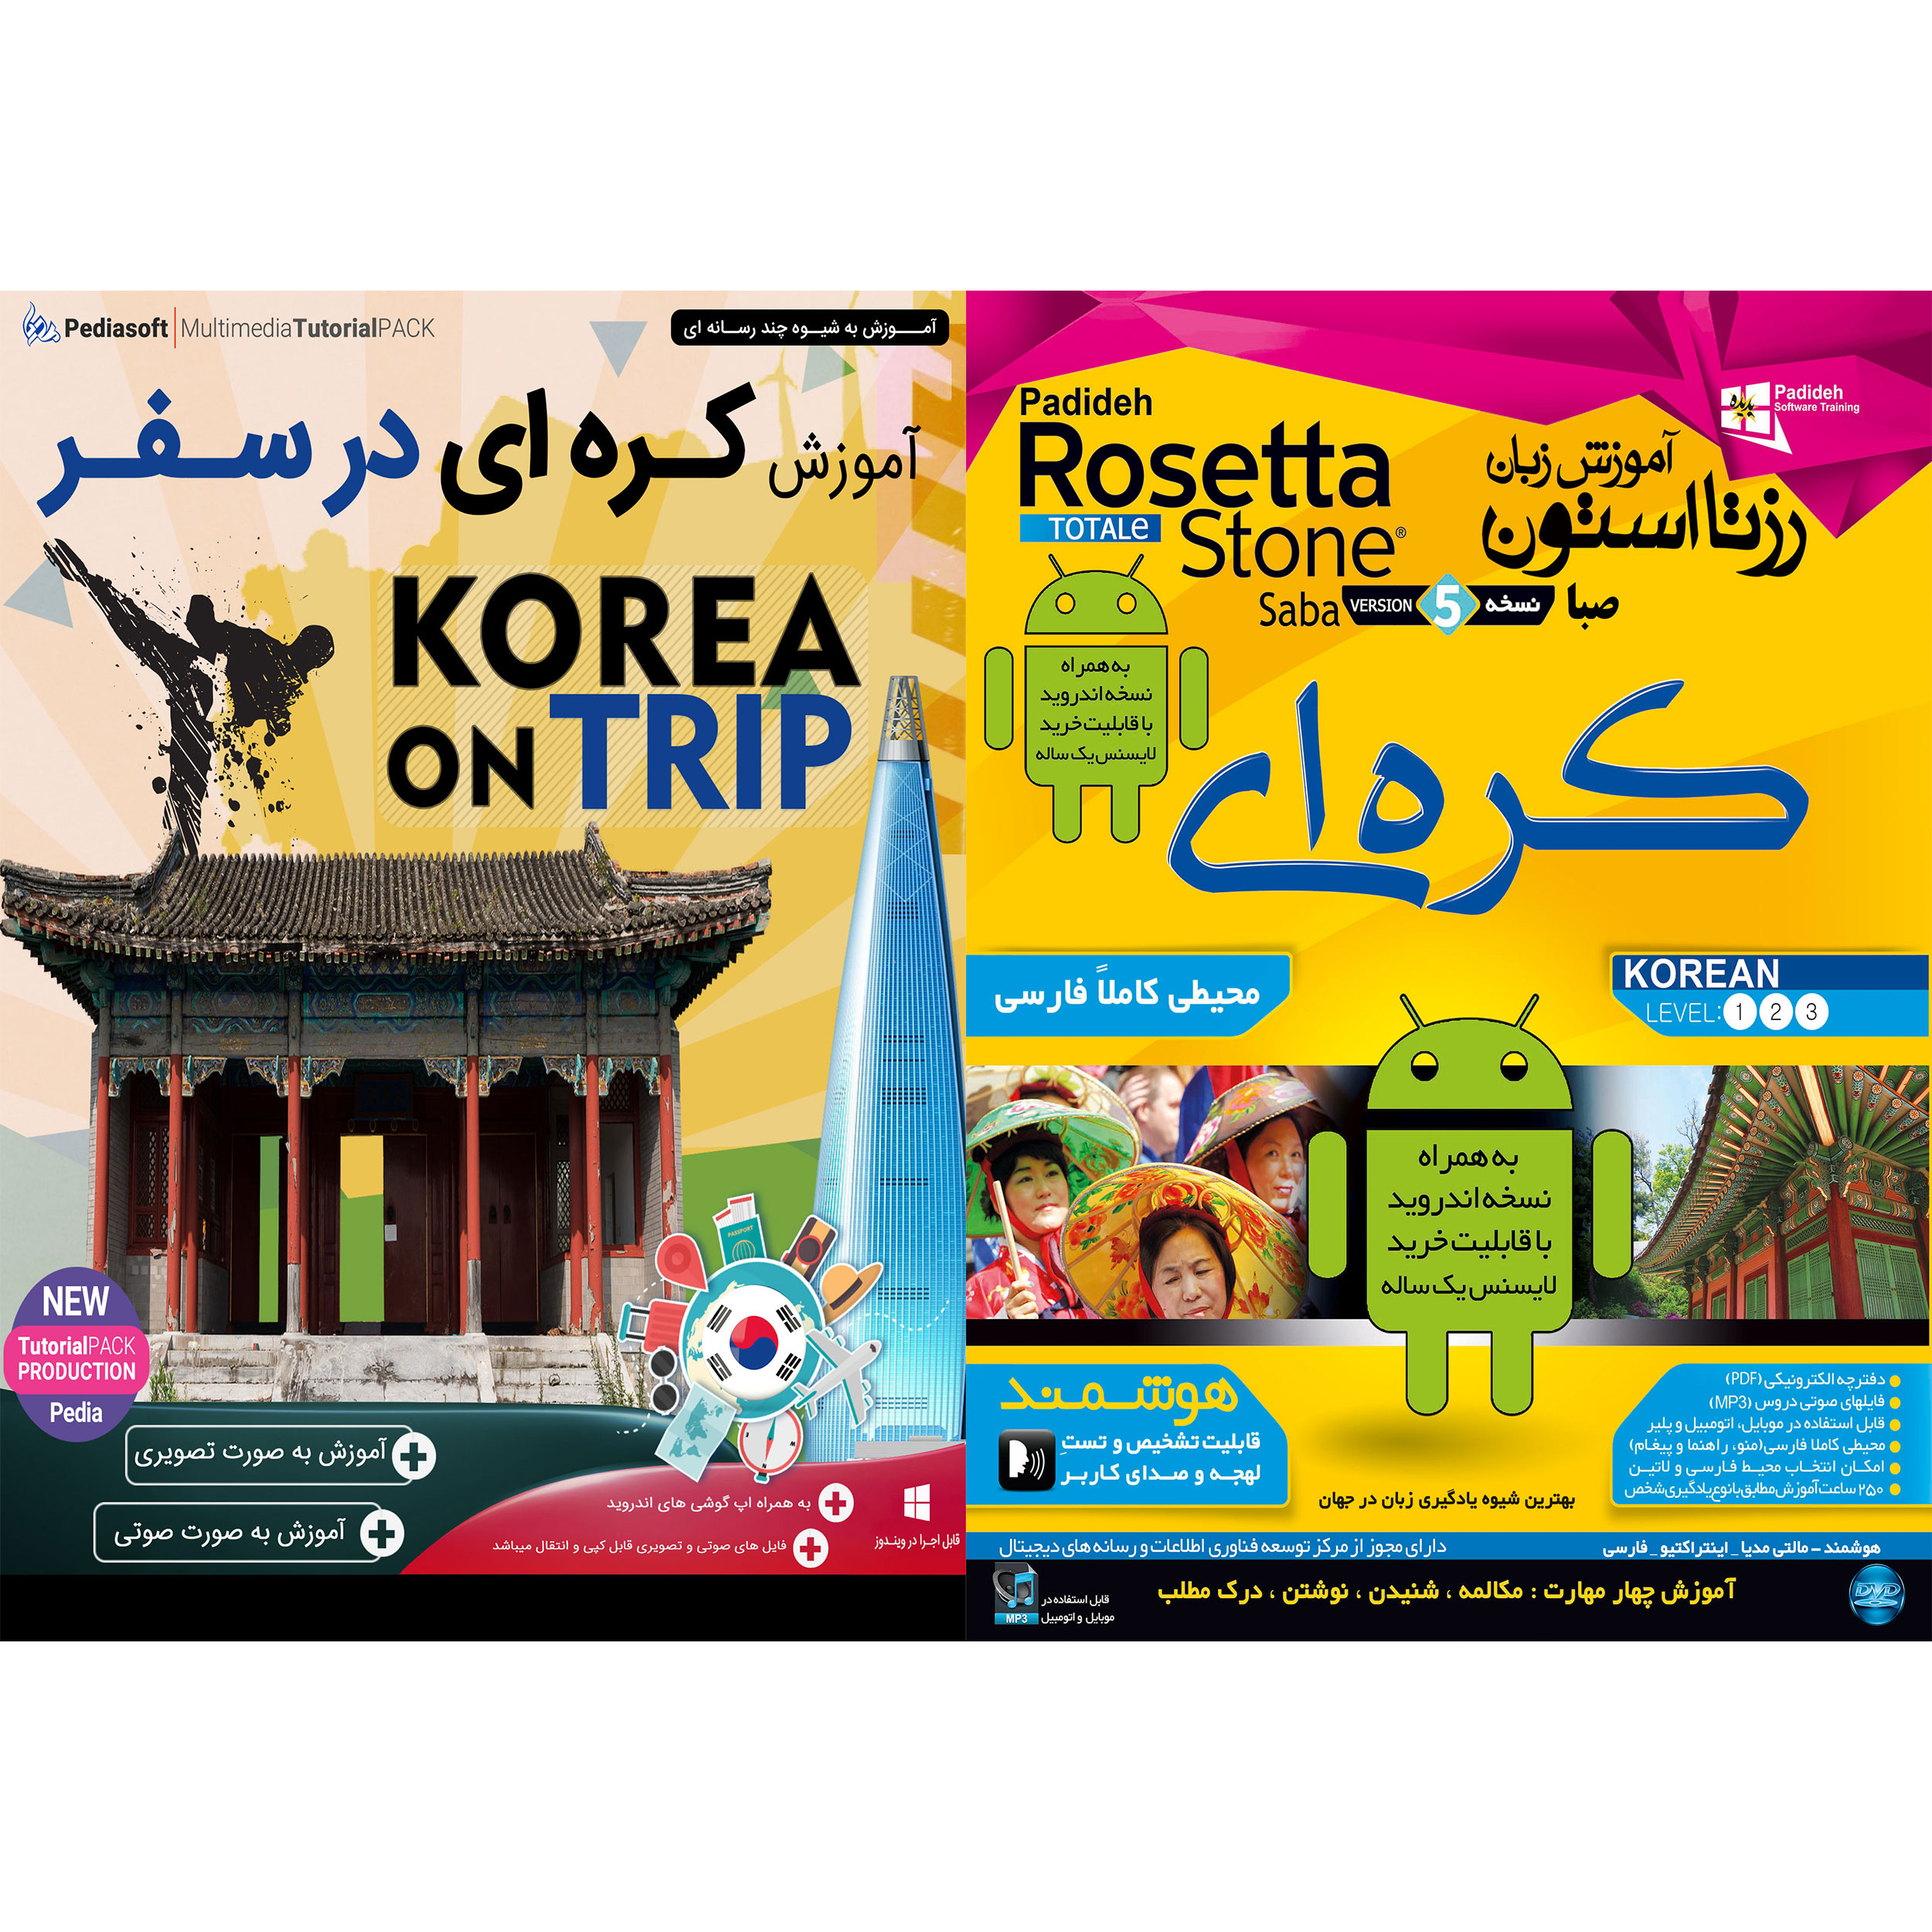 نرم افزار آموزش زبان کره ای رزتا استون صبا نشر پدیده به همراه نرم افزار آموزش زبان کره ای در سفر نشر پدیا سافت